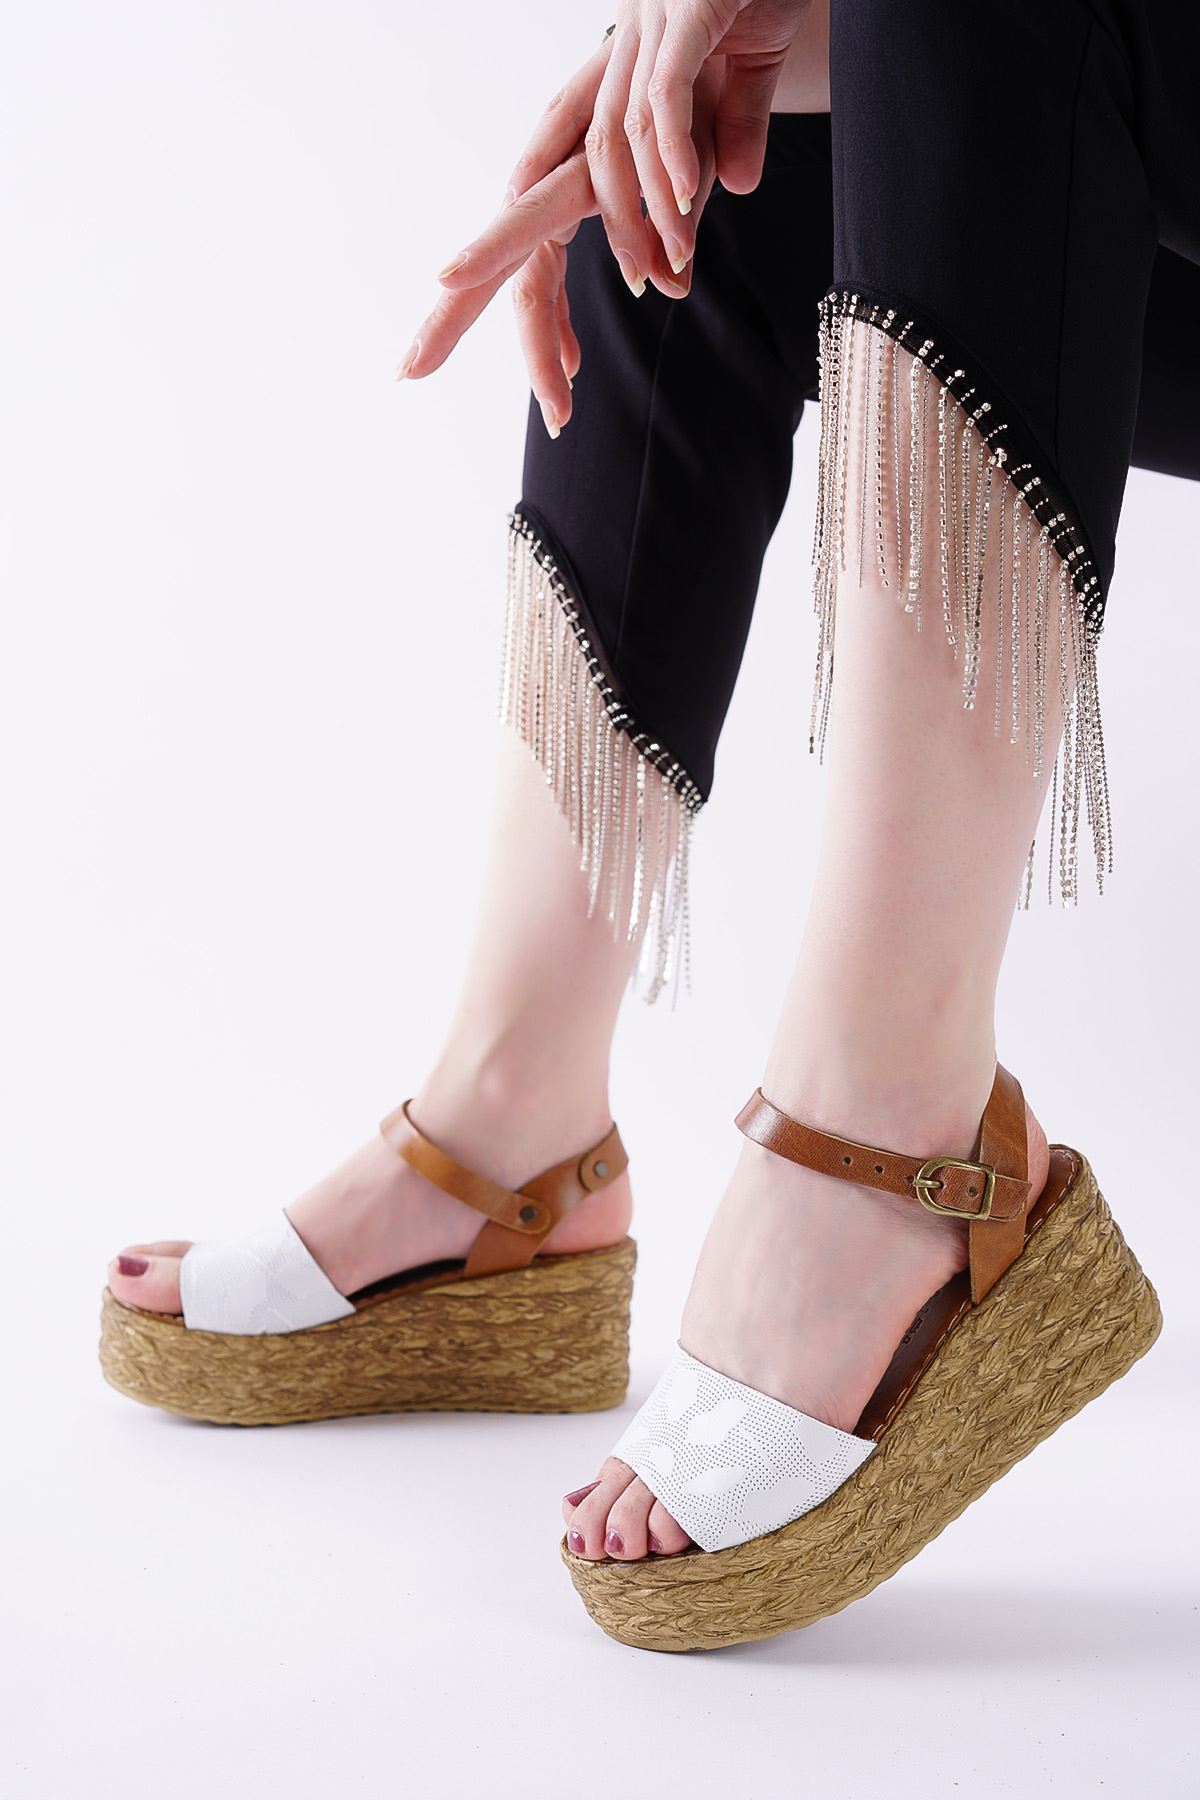 Megan Beyaz Taba Hakiki Deri Dolgu Topuklu Kadın Ayakkabı